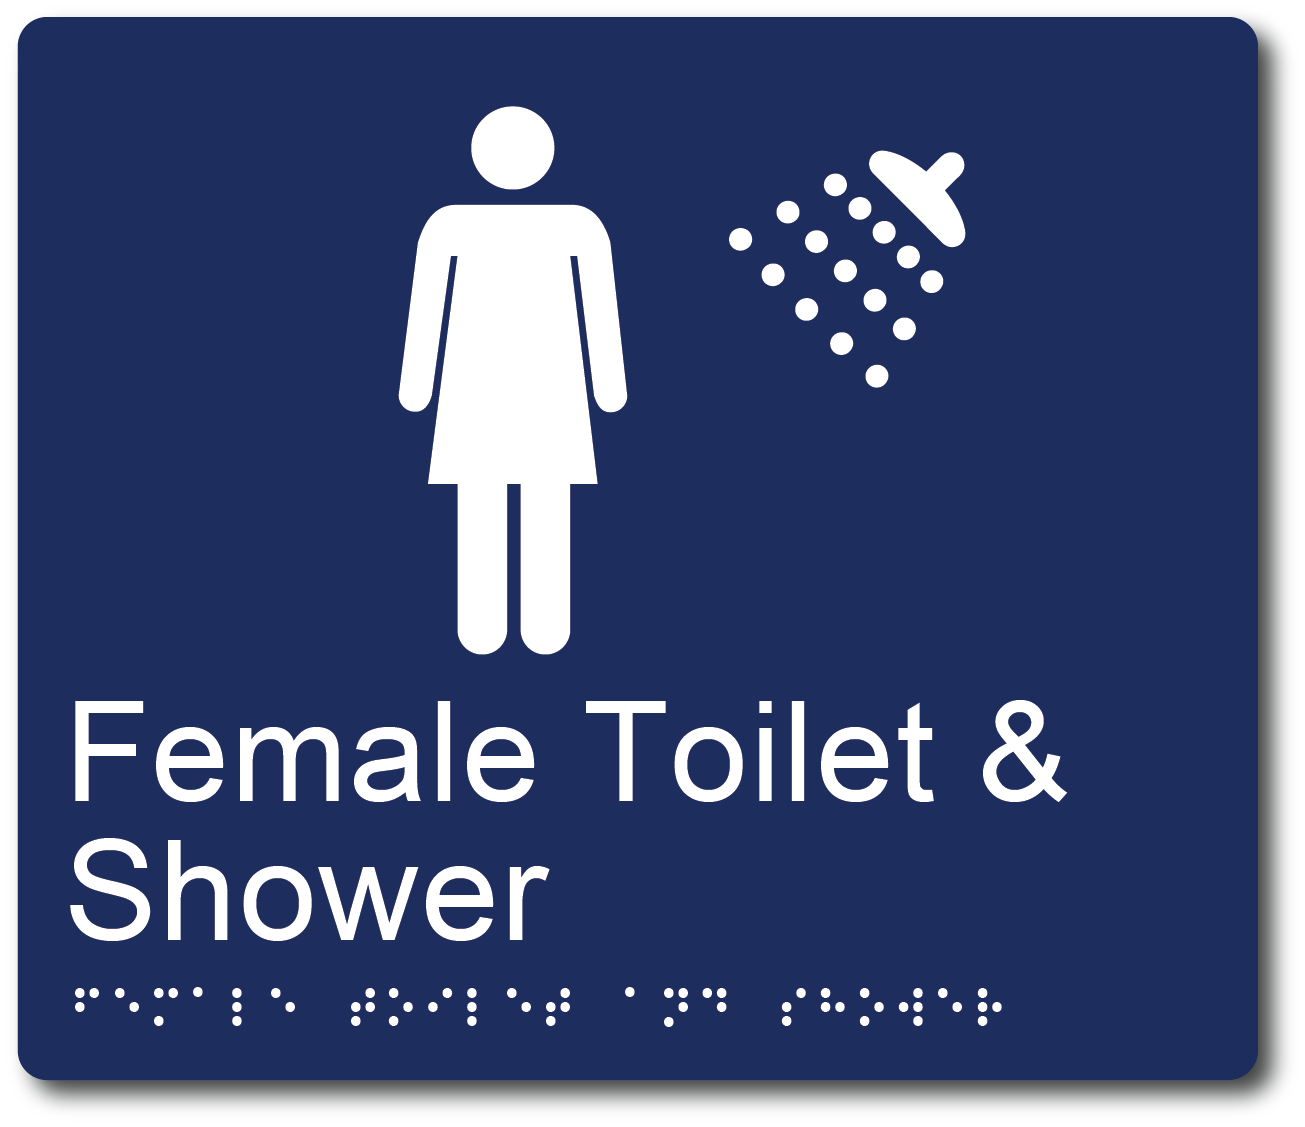 Female Toilet & Shower